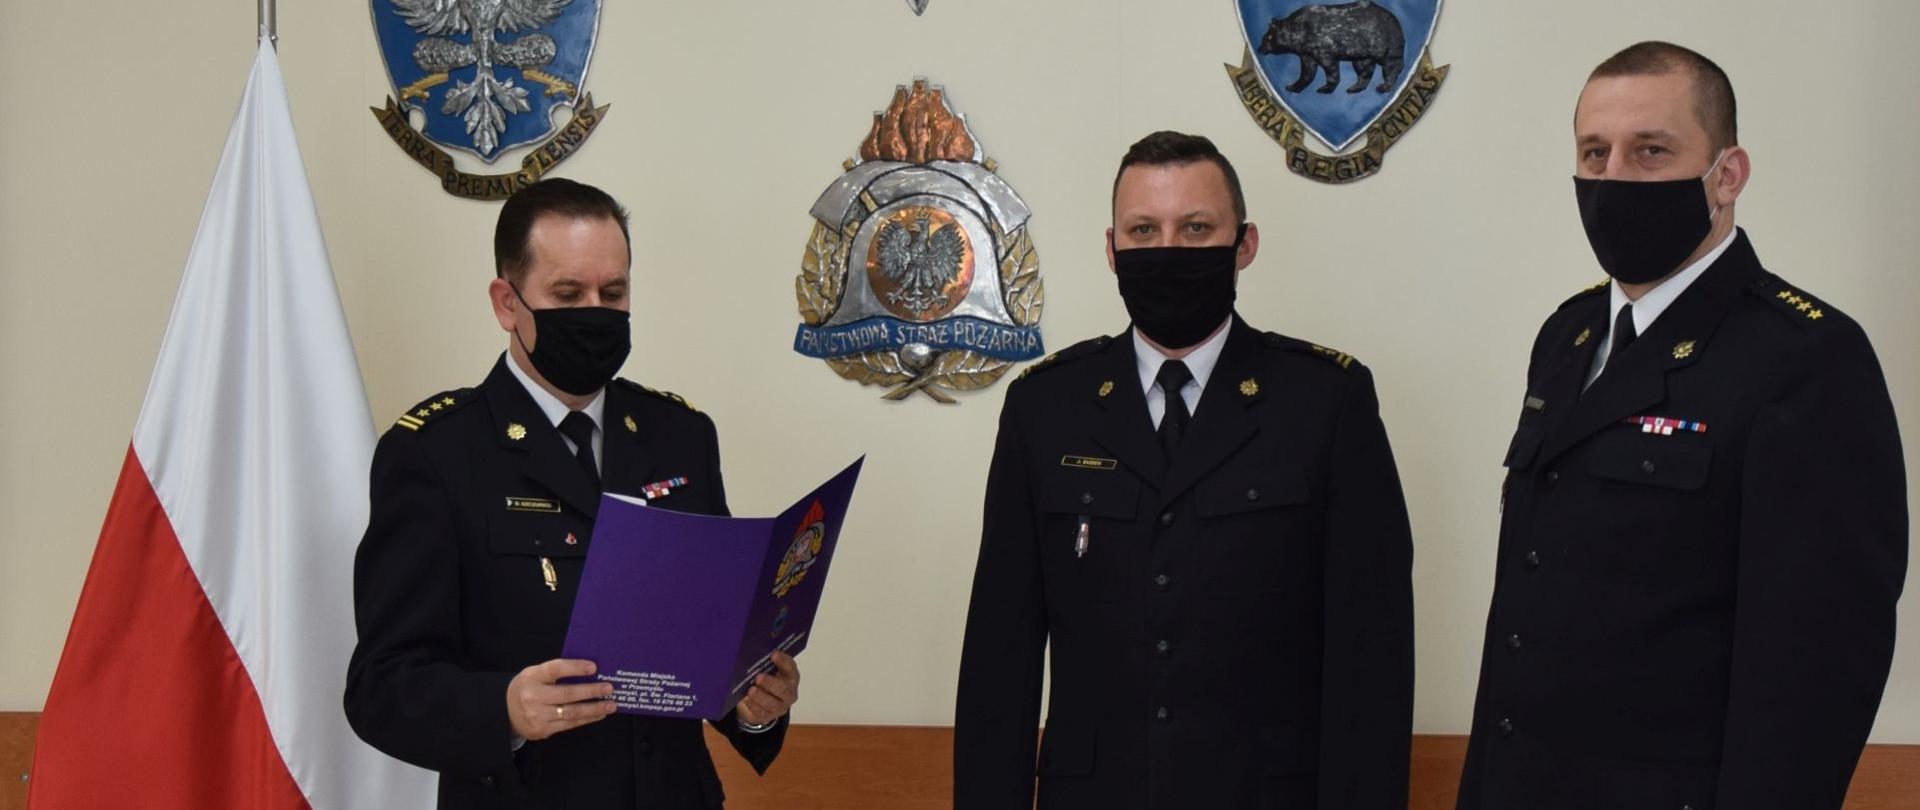 Na zdjęciu komendant miejski PSP w Przemyślu wraz ze swoim zastępcą odczytuje podziękowanie za długoletnią służbę naczelnikowi wydziału operacyjnego